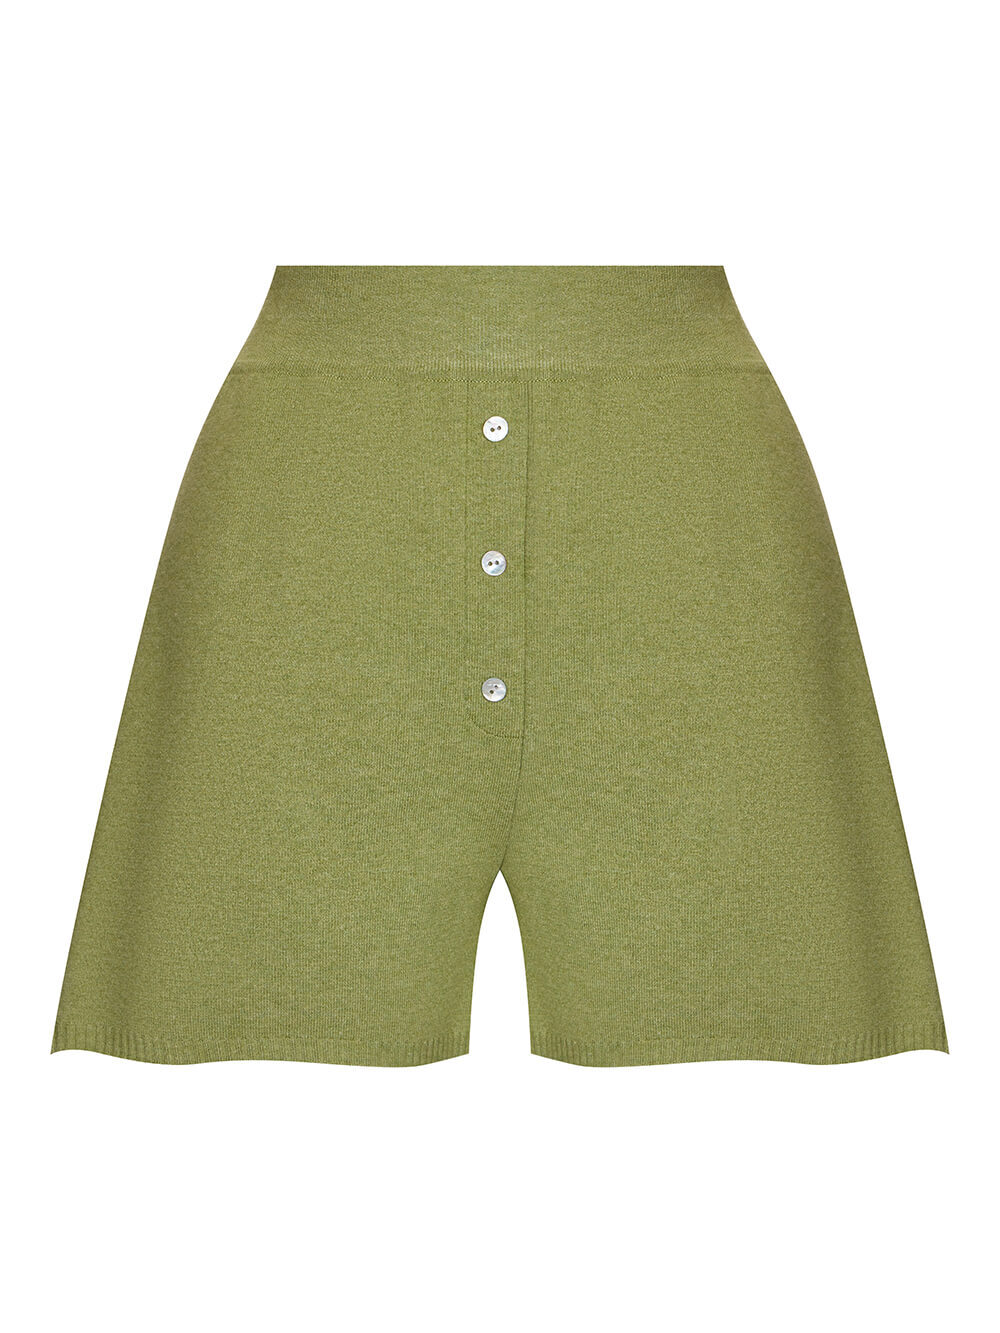 Женские шорты светло-зеленого цвета из вискозы - фото 1